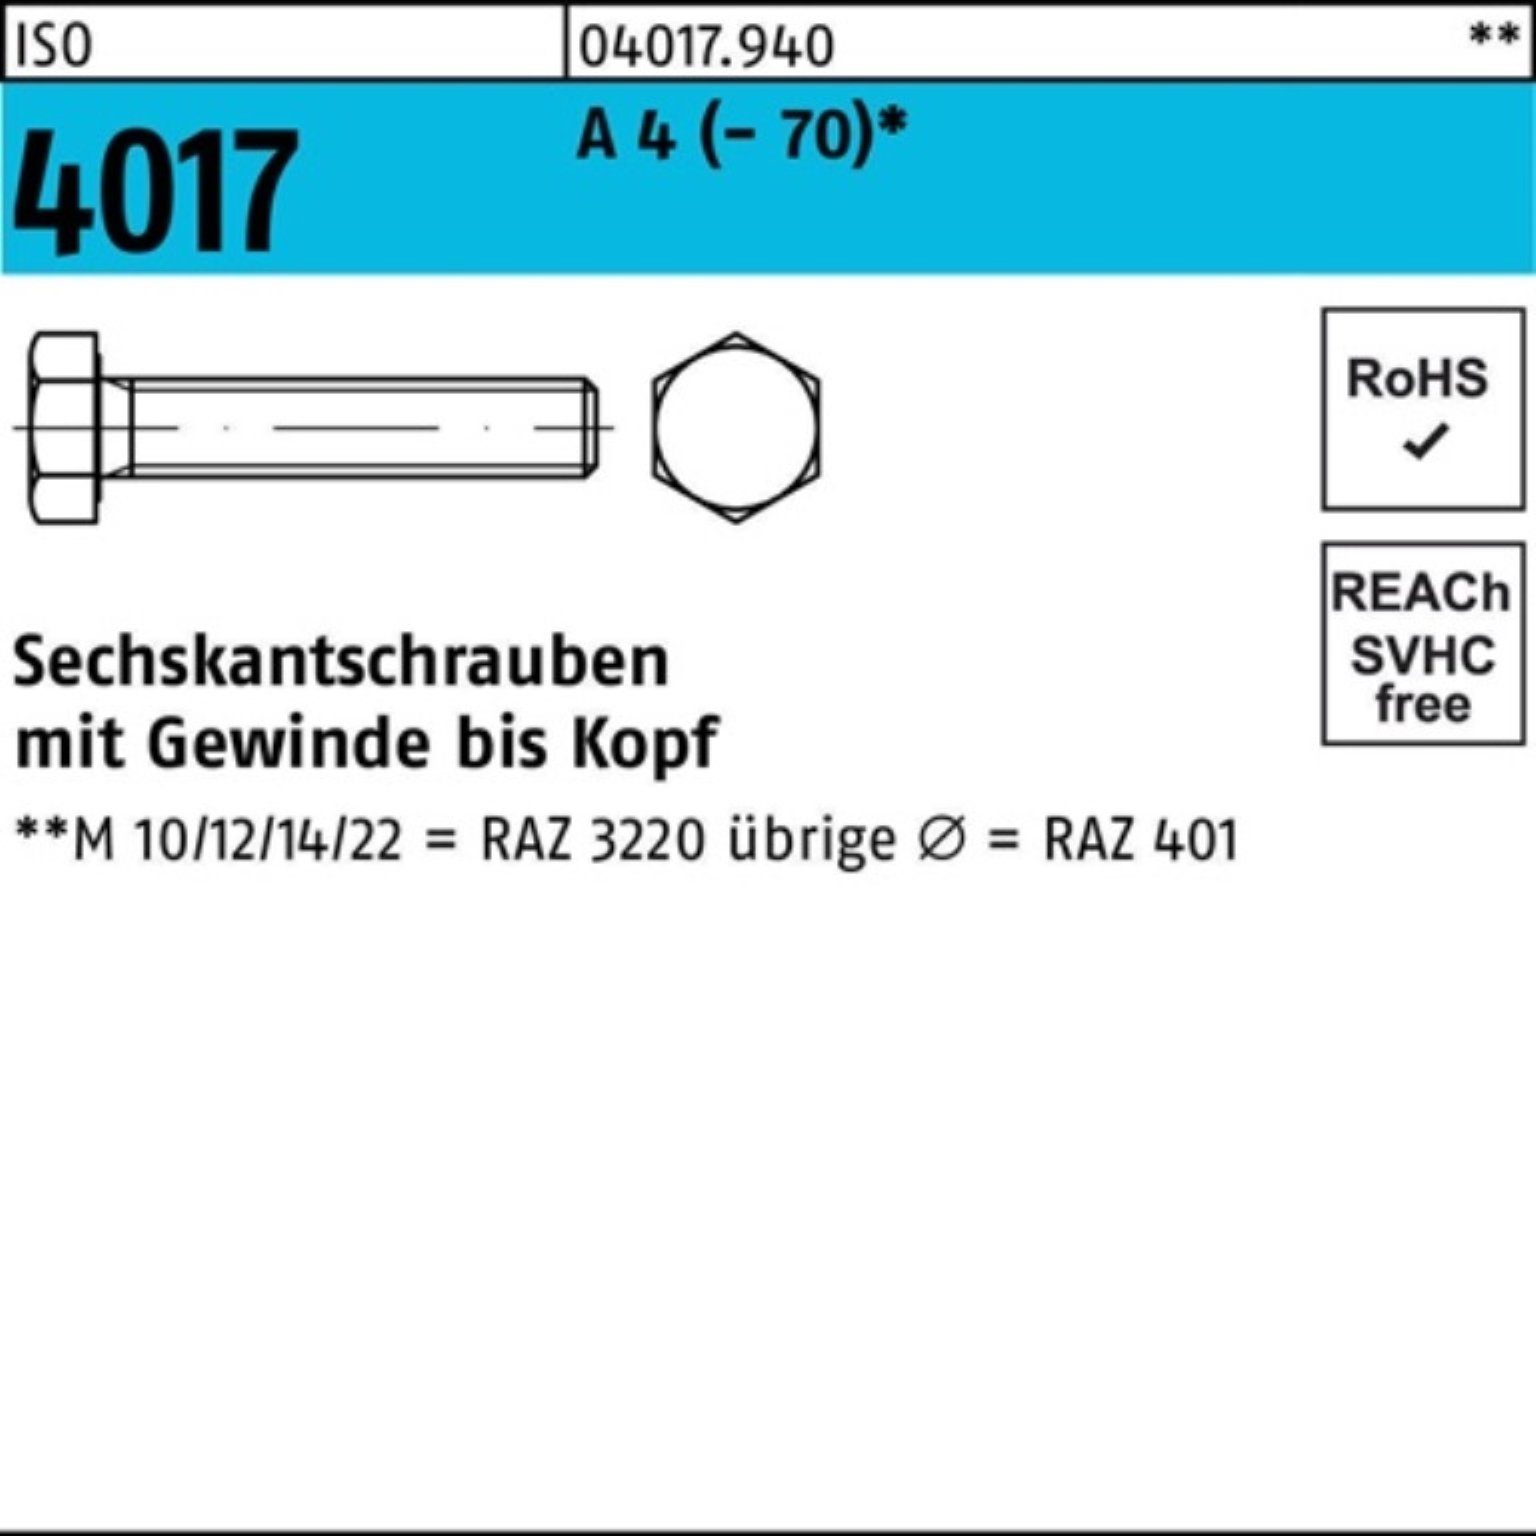 Bufab Sechskantschraube 100er Pack Sechskantschraube ISO 4017 VG M8x 50 A 4 (70) 100 Stück